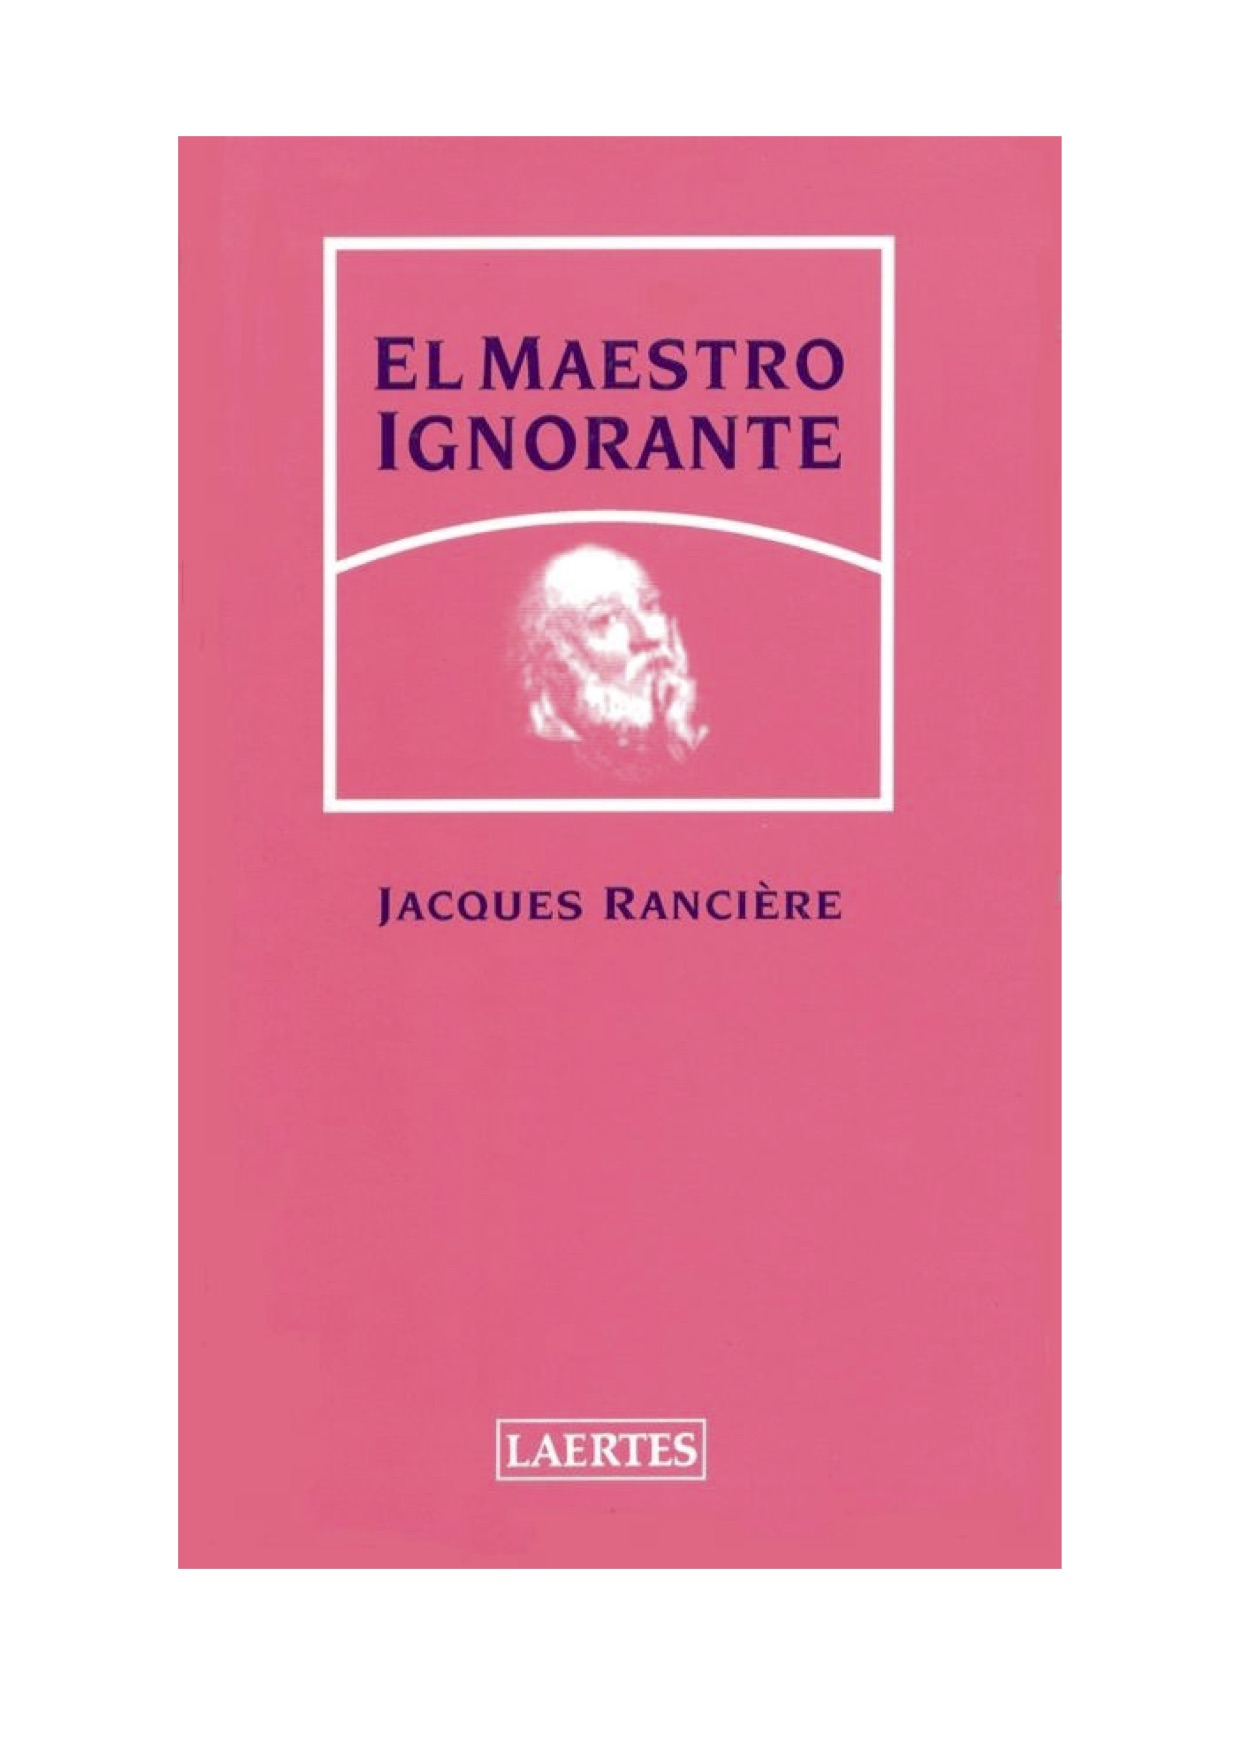 Jacques Rancière-El maestro ignorante